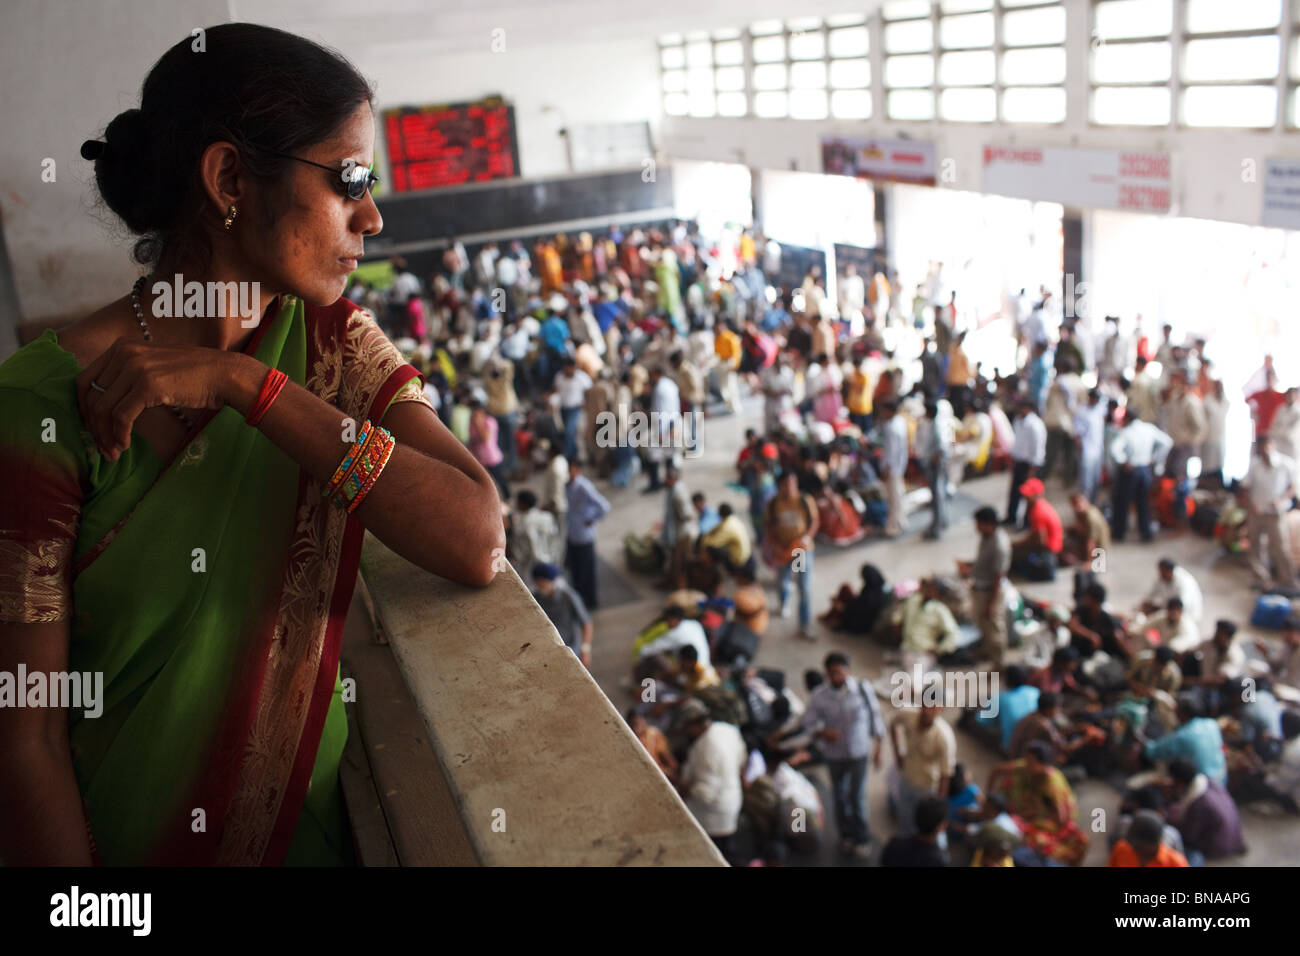 Ein damenuhren überfüllten ticket Halle an der New Delhi Railway Station in Delhi, Indien. Stockfoto